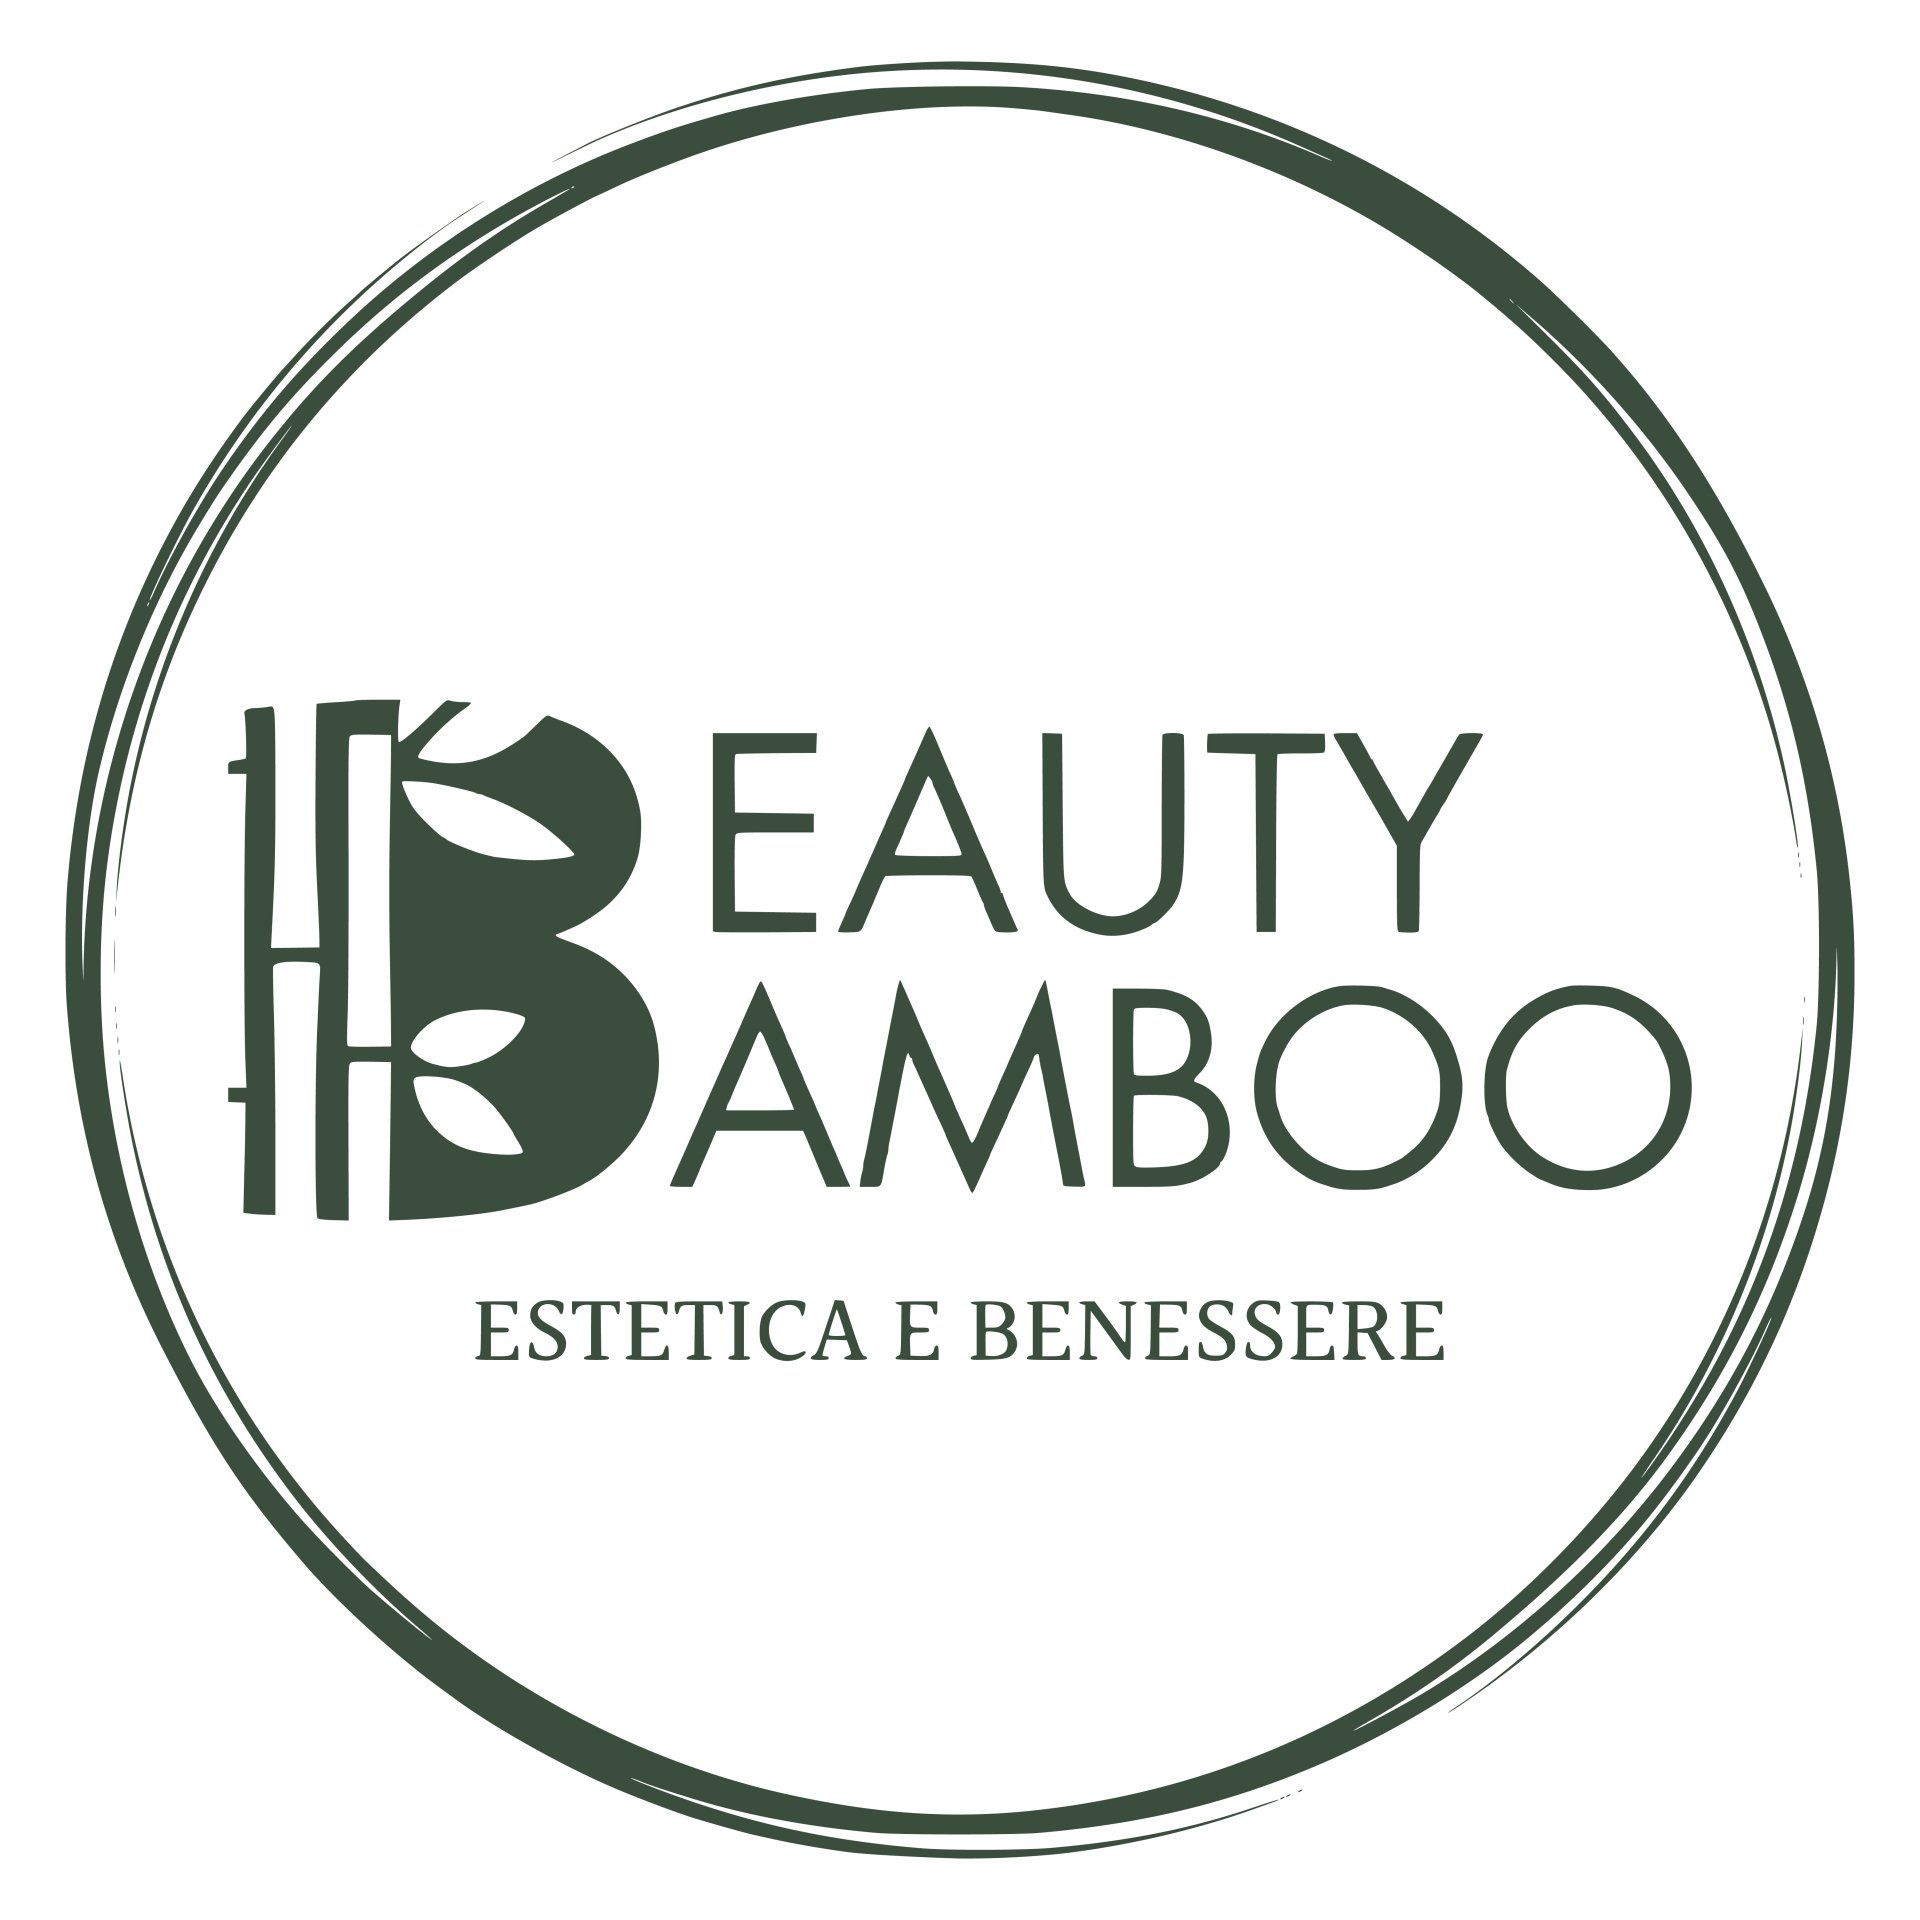 Un logo per un salone di bellezza chiamato beauty bambù.